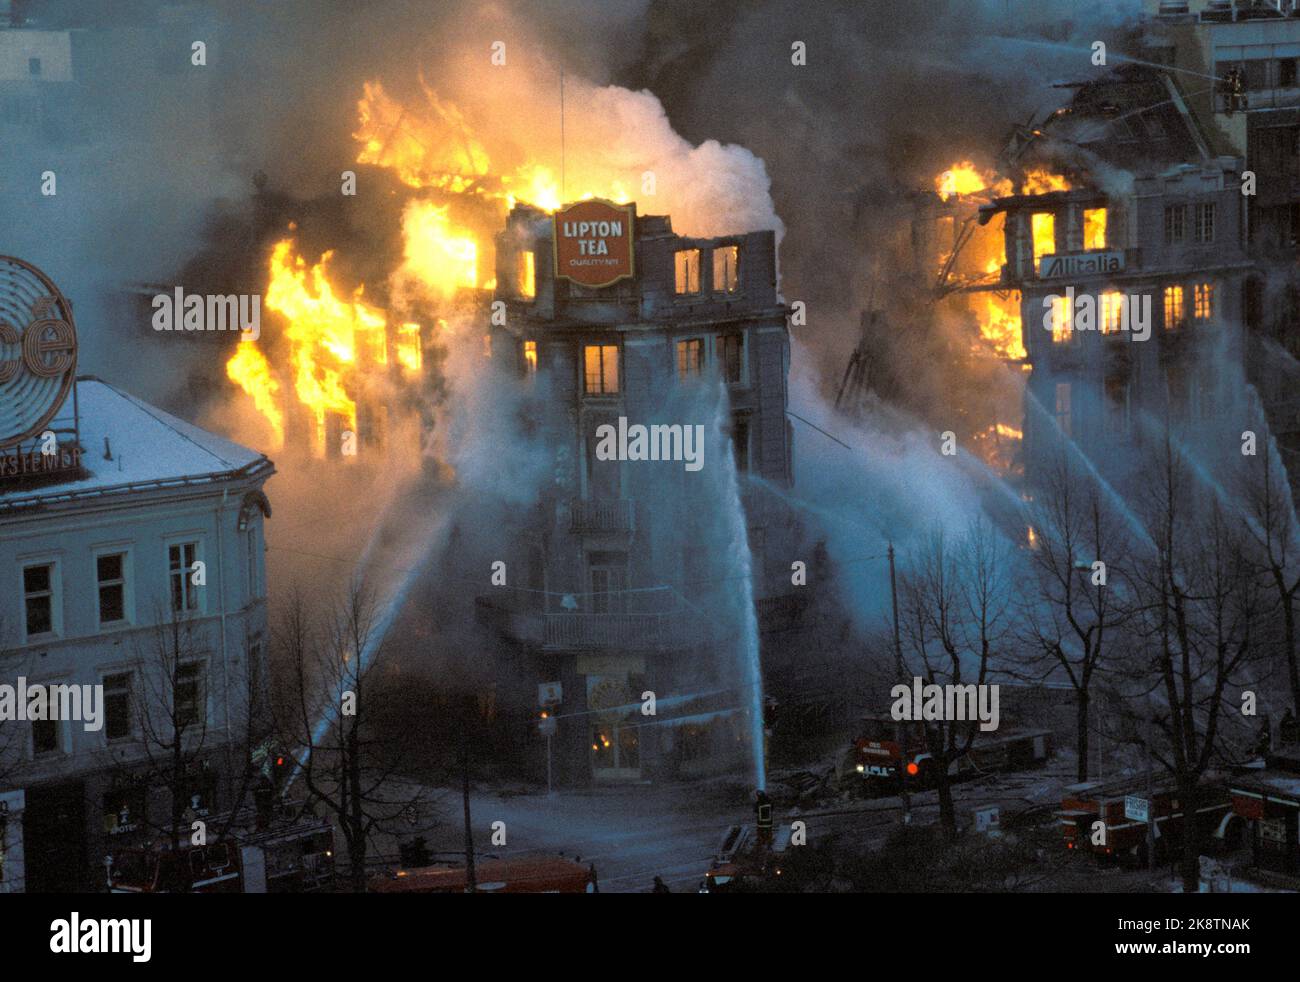 Oslo 1986-02-19: STORTINGSGATA 8 TOTALSKADD AV BRANN. Etter seks timers innsats fikk Oslo brannvesen kontroll over flammene som herjet hjørnegården Stortingsgata 8. Da var bygningen fullstendig utbrent. Også nabogården Rosenkrantzgate 13B ble totalskadd. 70 brannmenn og 21 biler deltok på det meste i brannslukningen. En brannmann ble skadet og en stigebil ødelagt da fasaden mot Stortingsgata raste ut. For brannmannskapene var det en meget kaldt under slukningsarbeidet, - 20 minusgrader. Morgenen etter var brannruinene dekket av is. Brannen betegnes som den største i Oslo sentrum siden lille ju Stock Photo